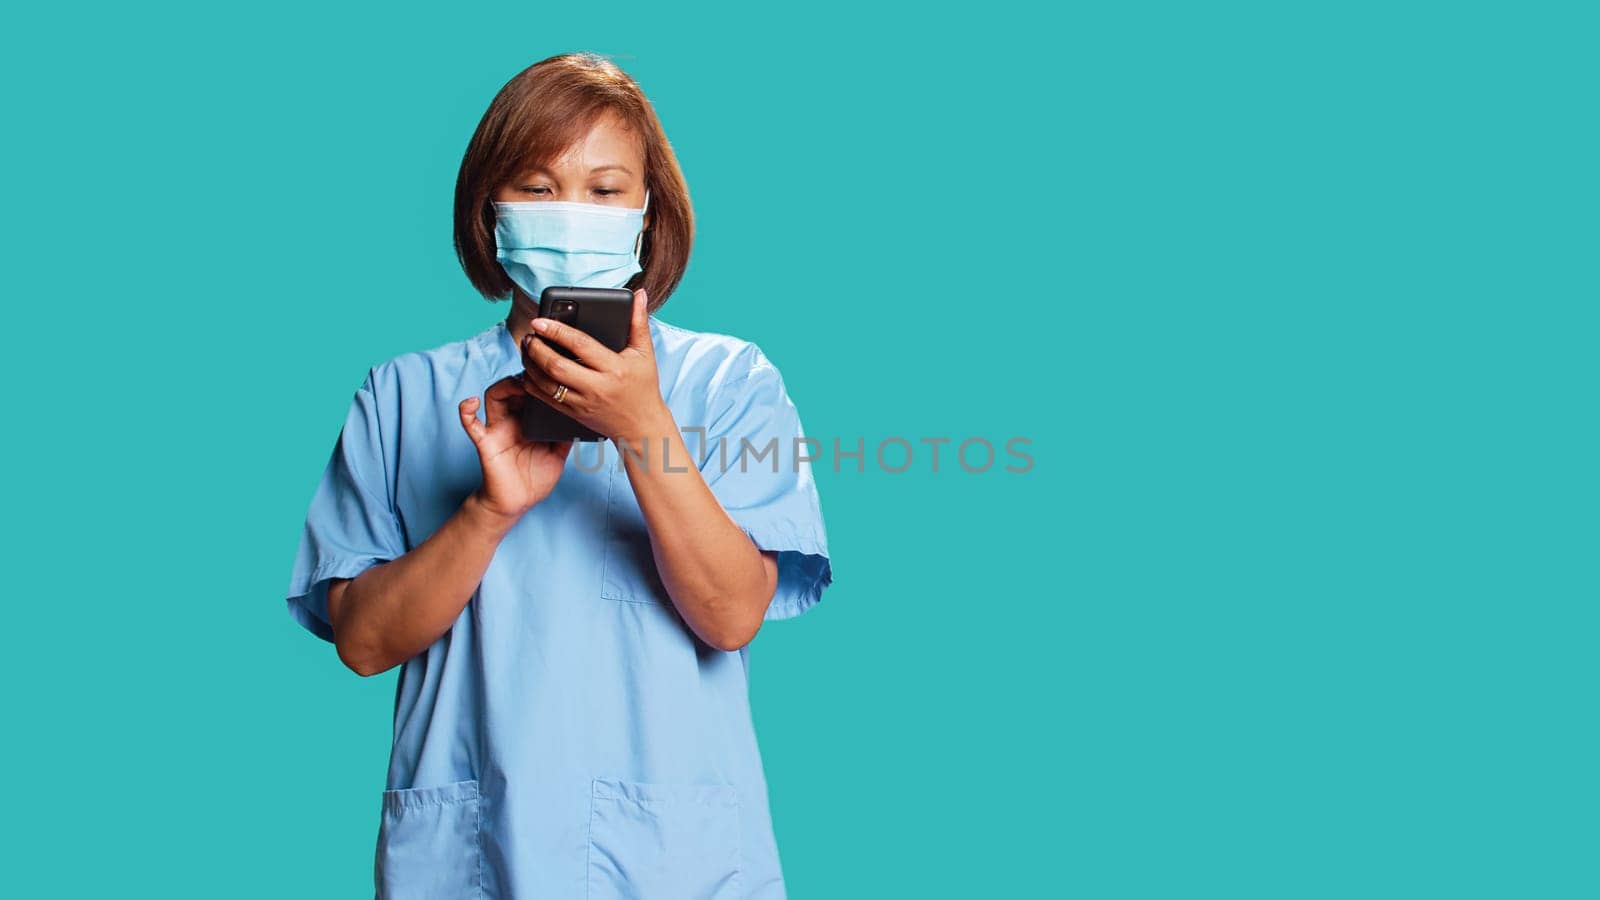 Nurse delivering bad news to patient by DCStudio